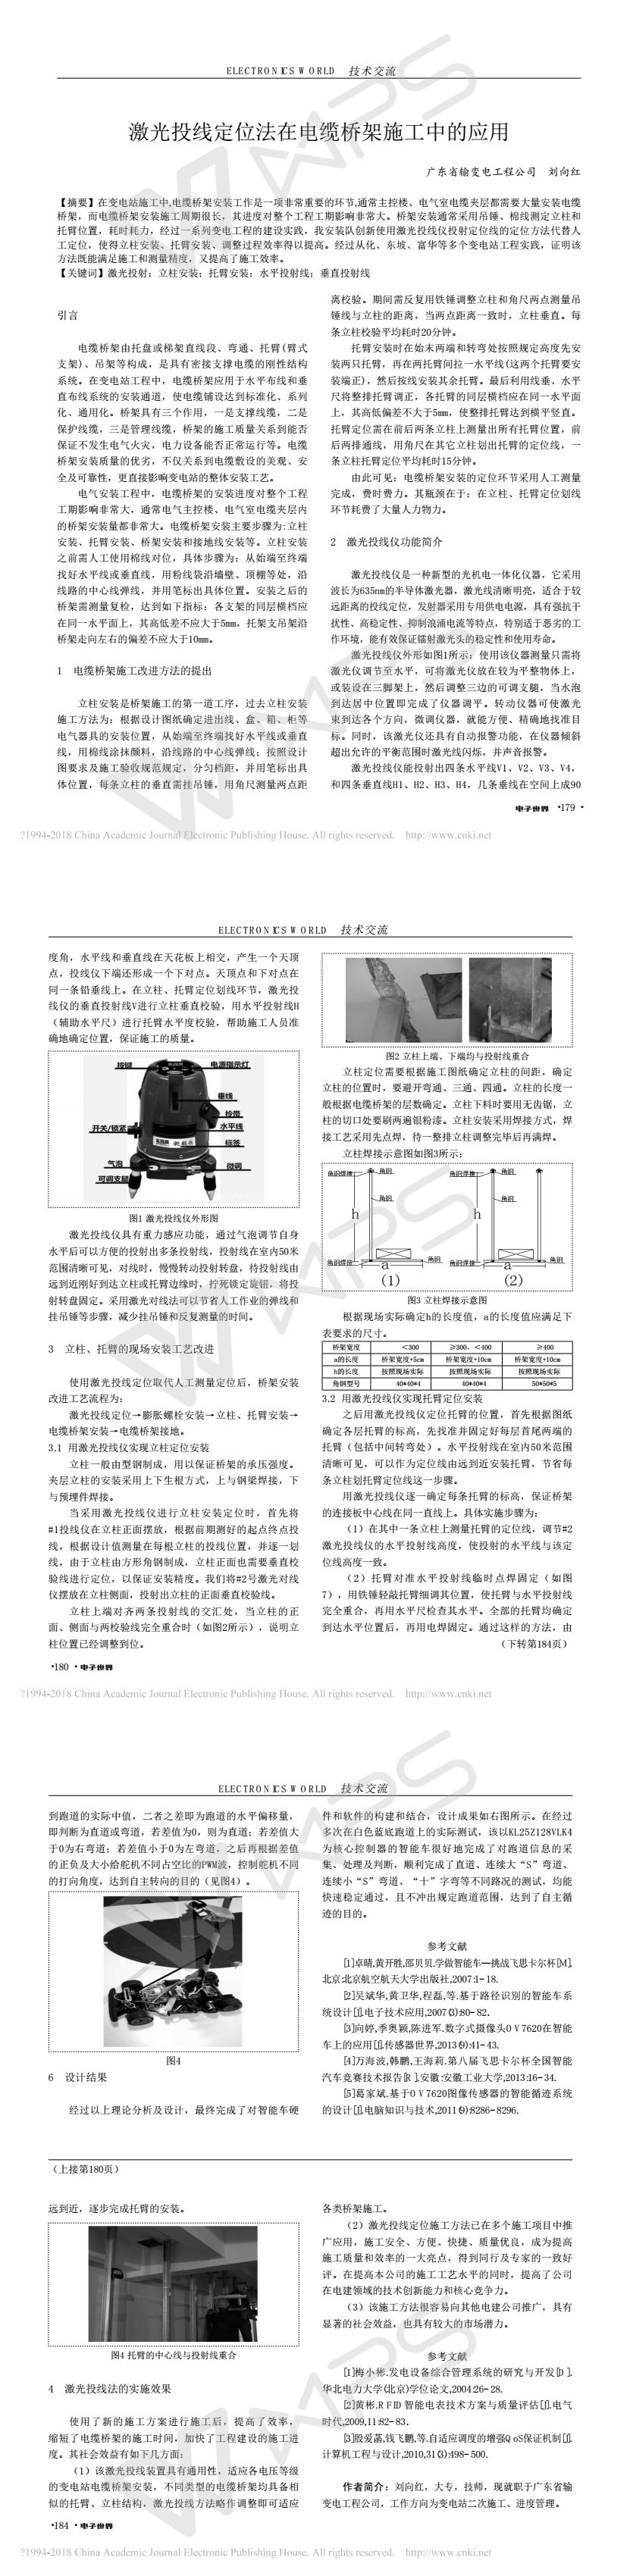 激光投线定位法在电缆桥架施工中的应用_刘向红.jpg